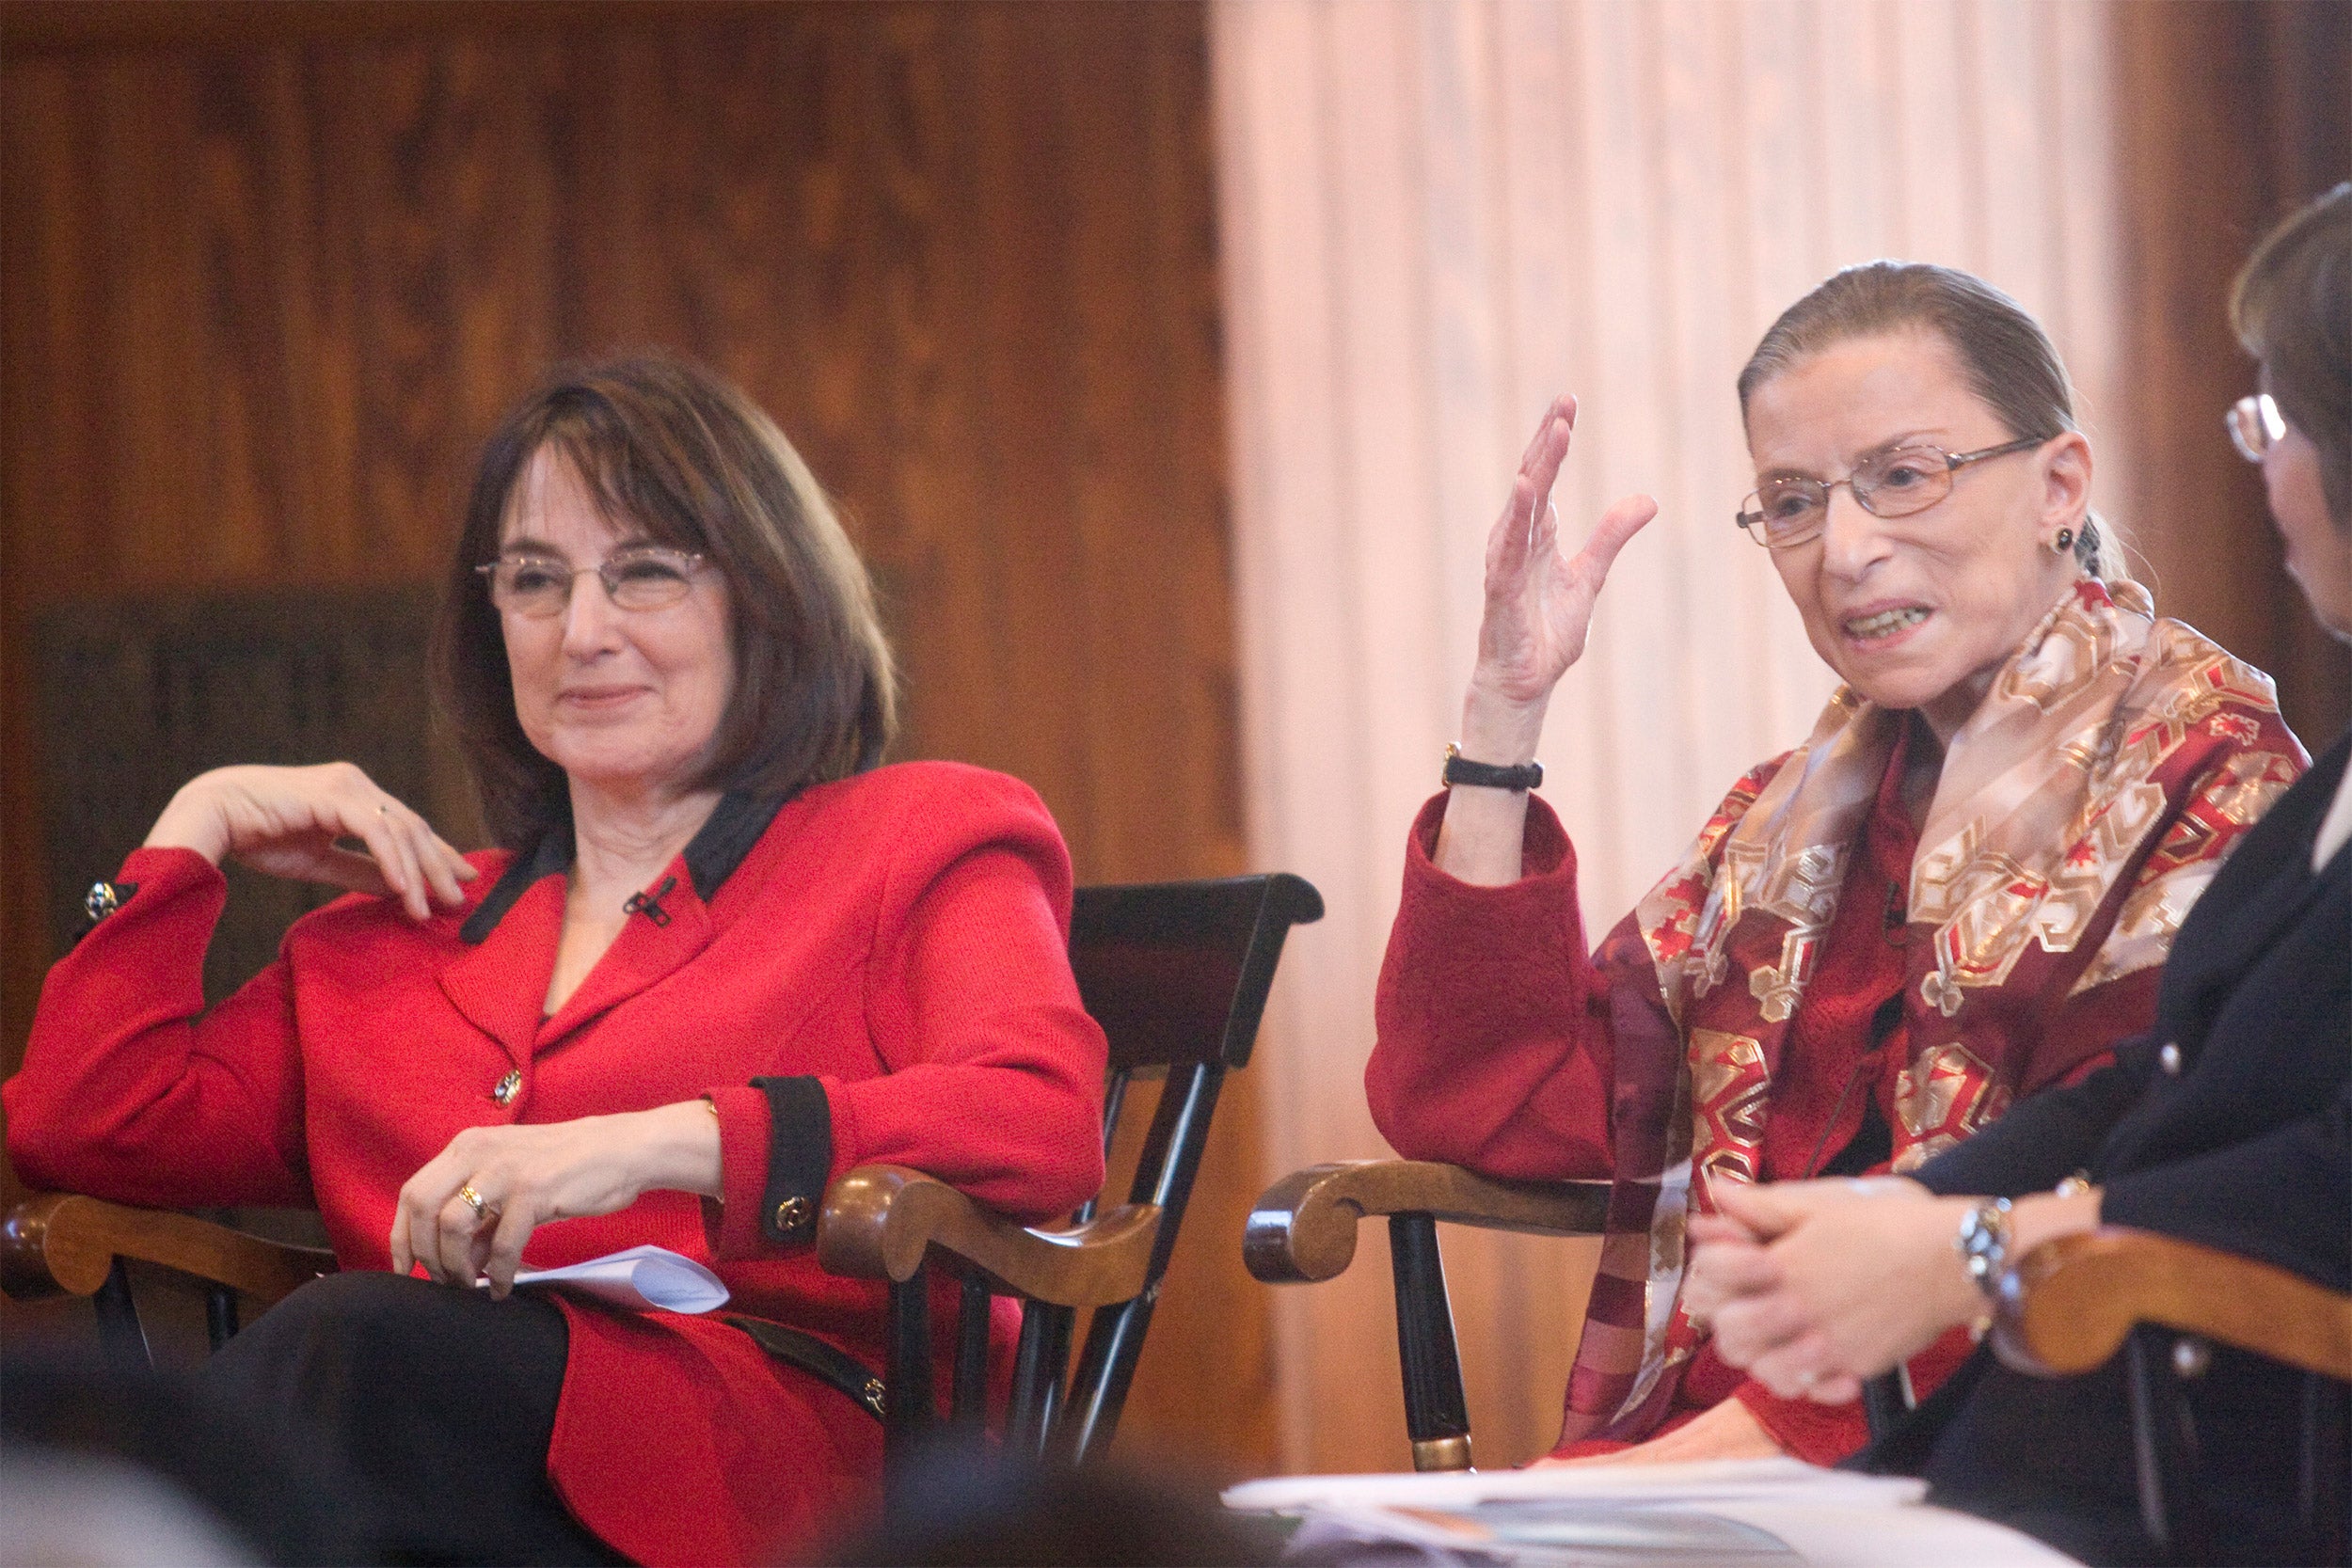 Ruth Bader Ginsburg on Harvard panel.